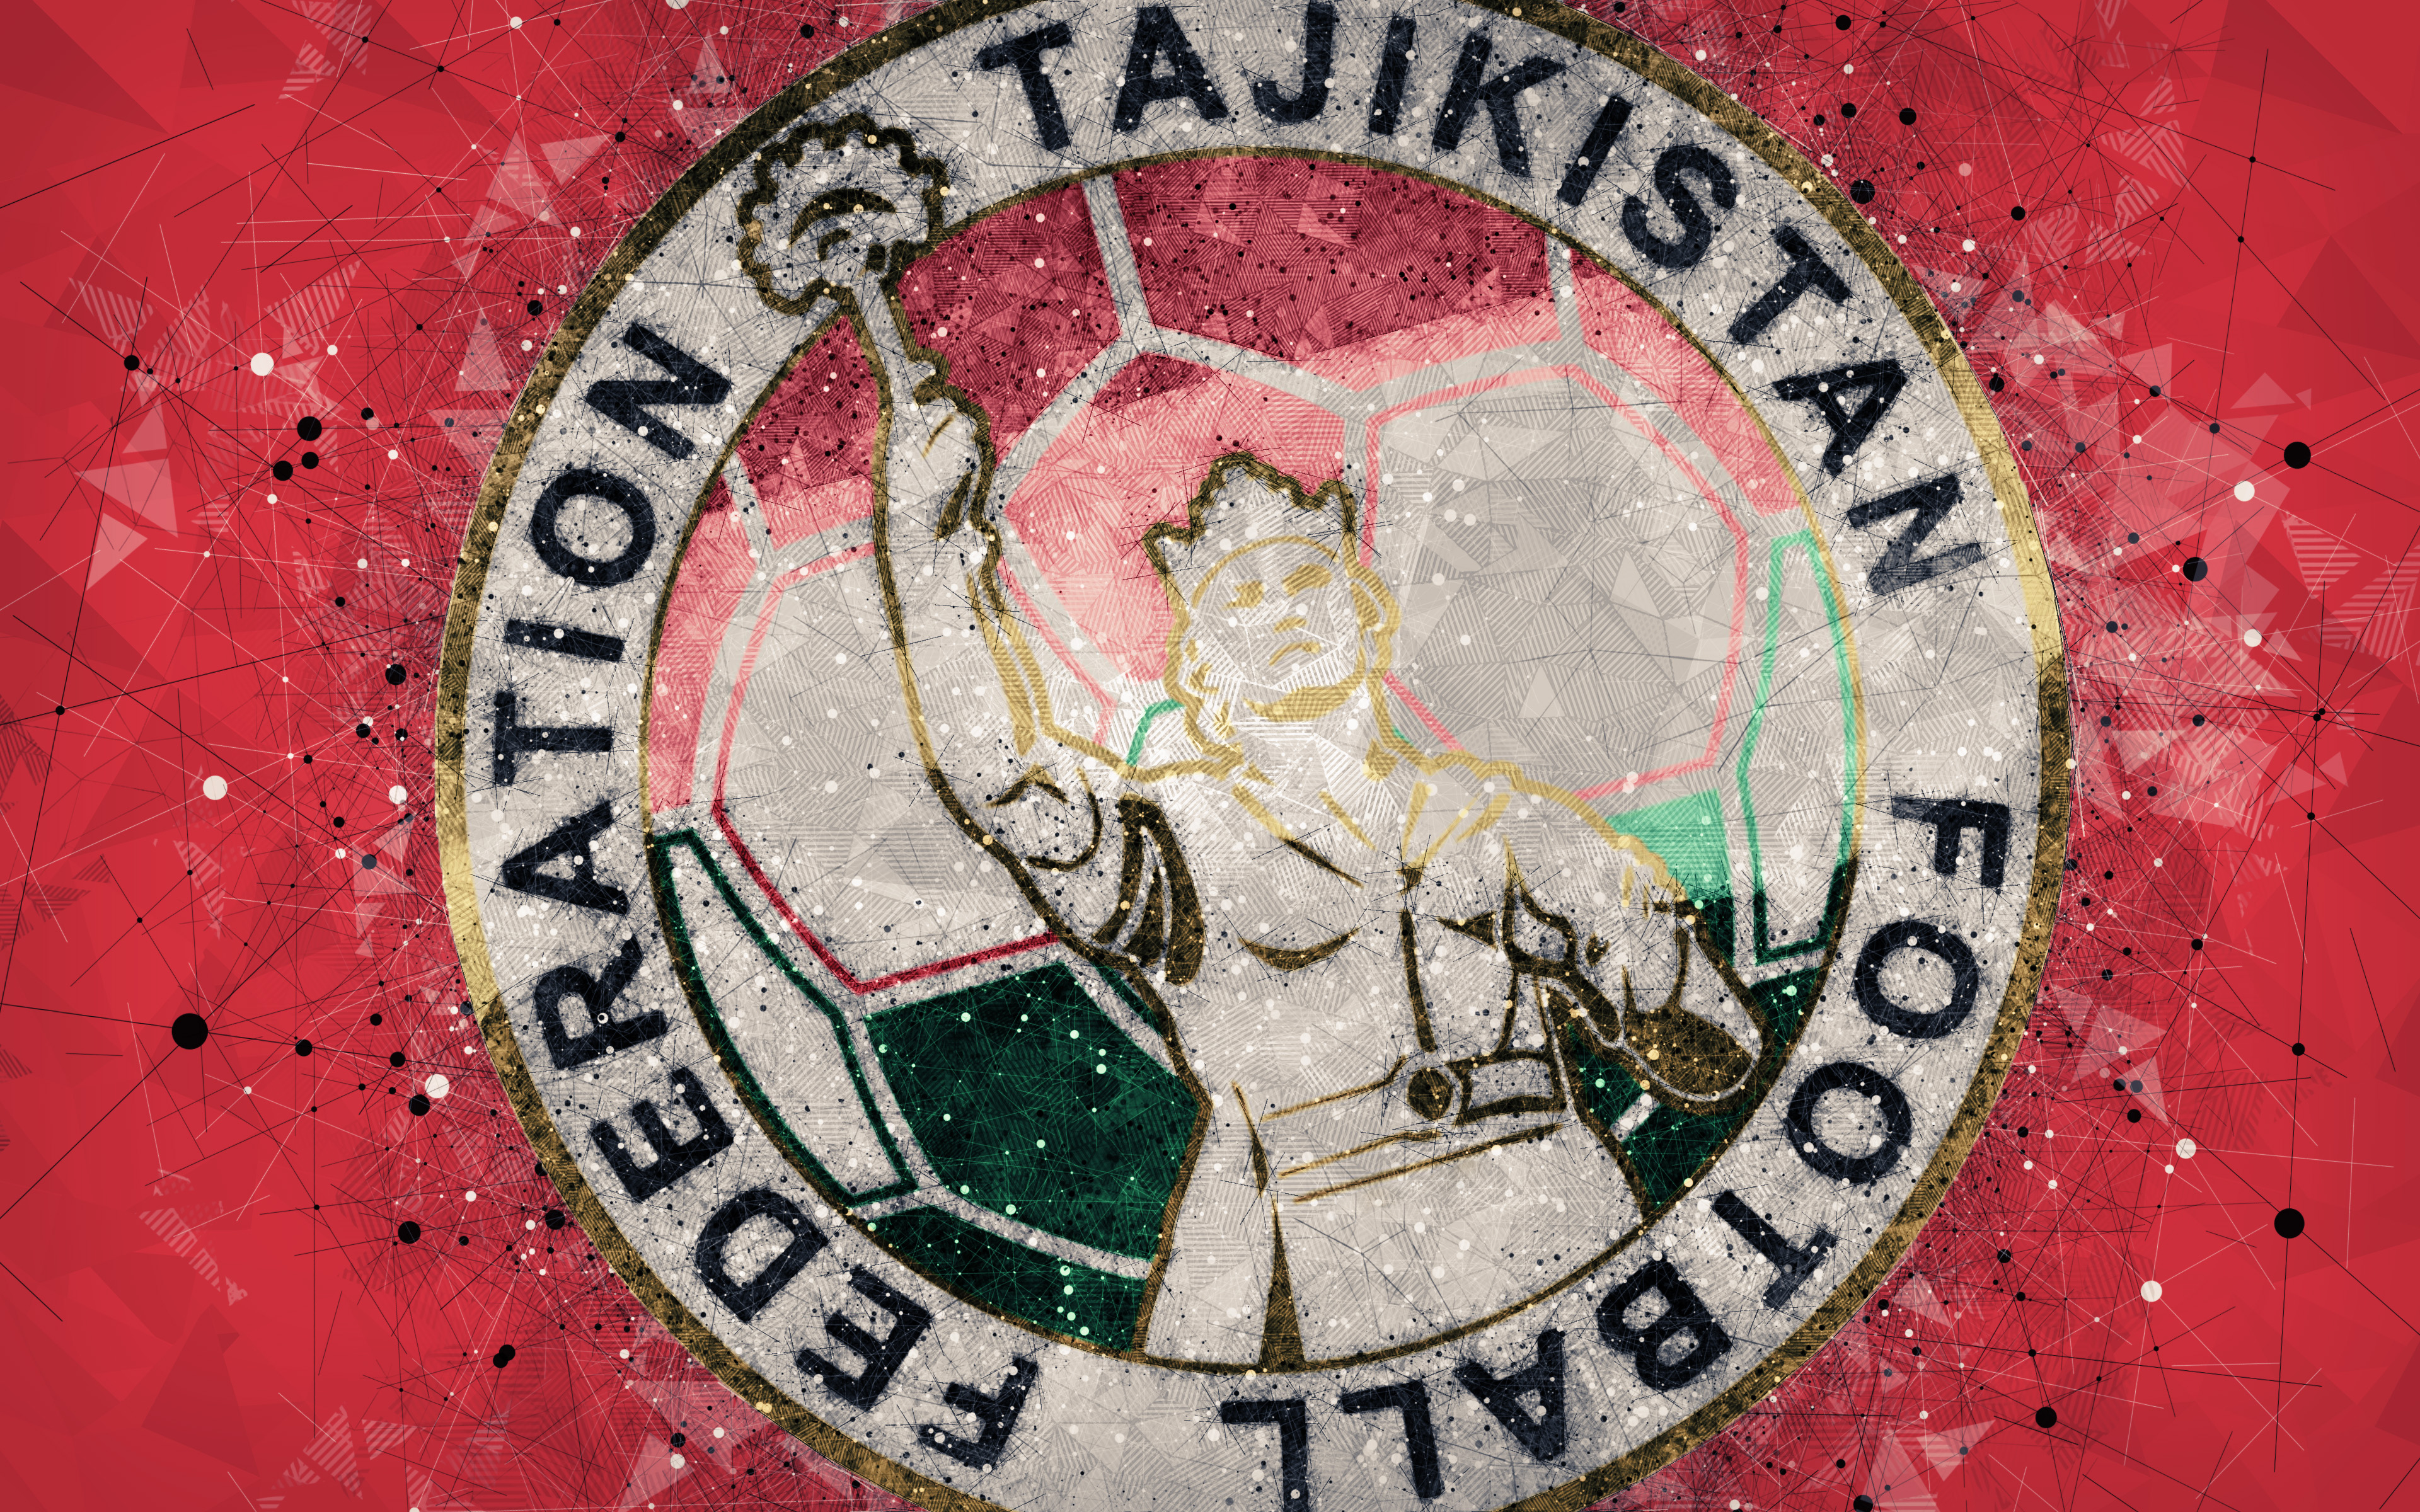 Скачать обои Сборная Таджикистана По Футболу на телефон бесплатно